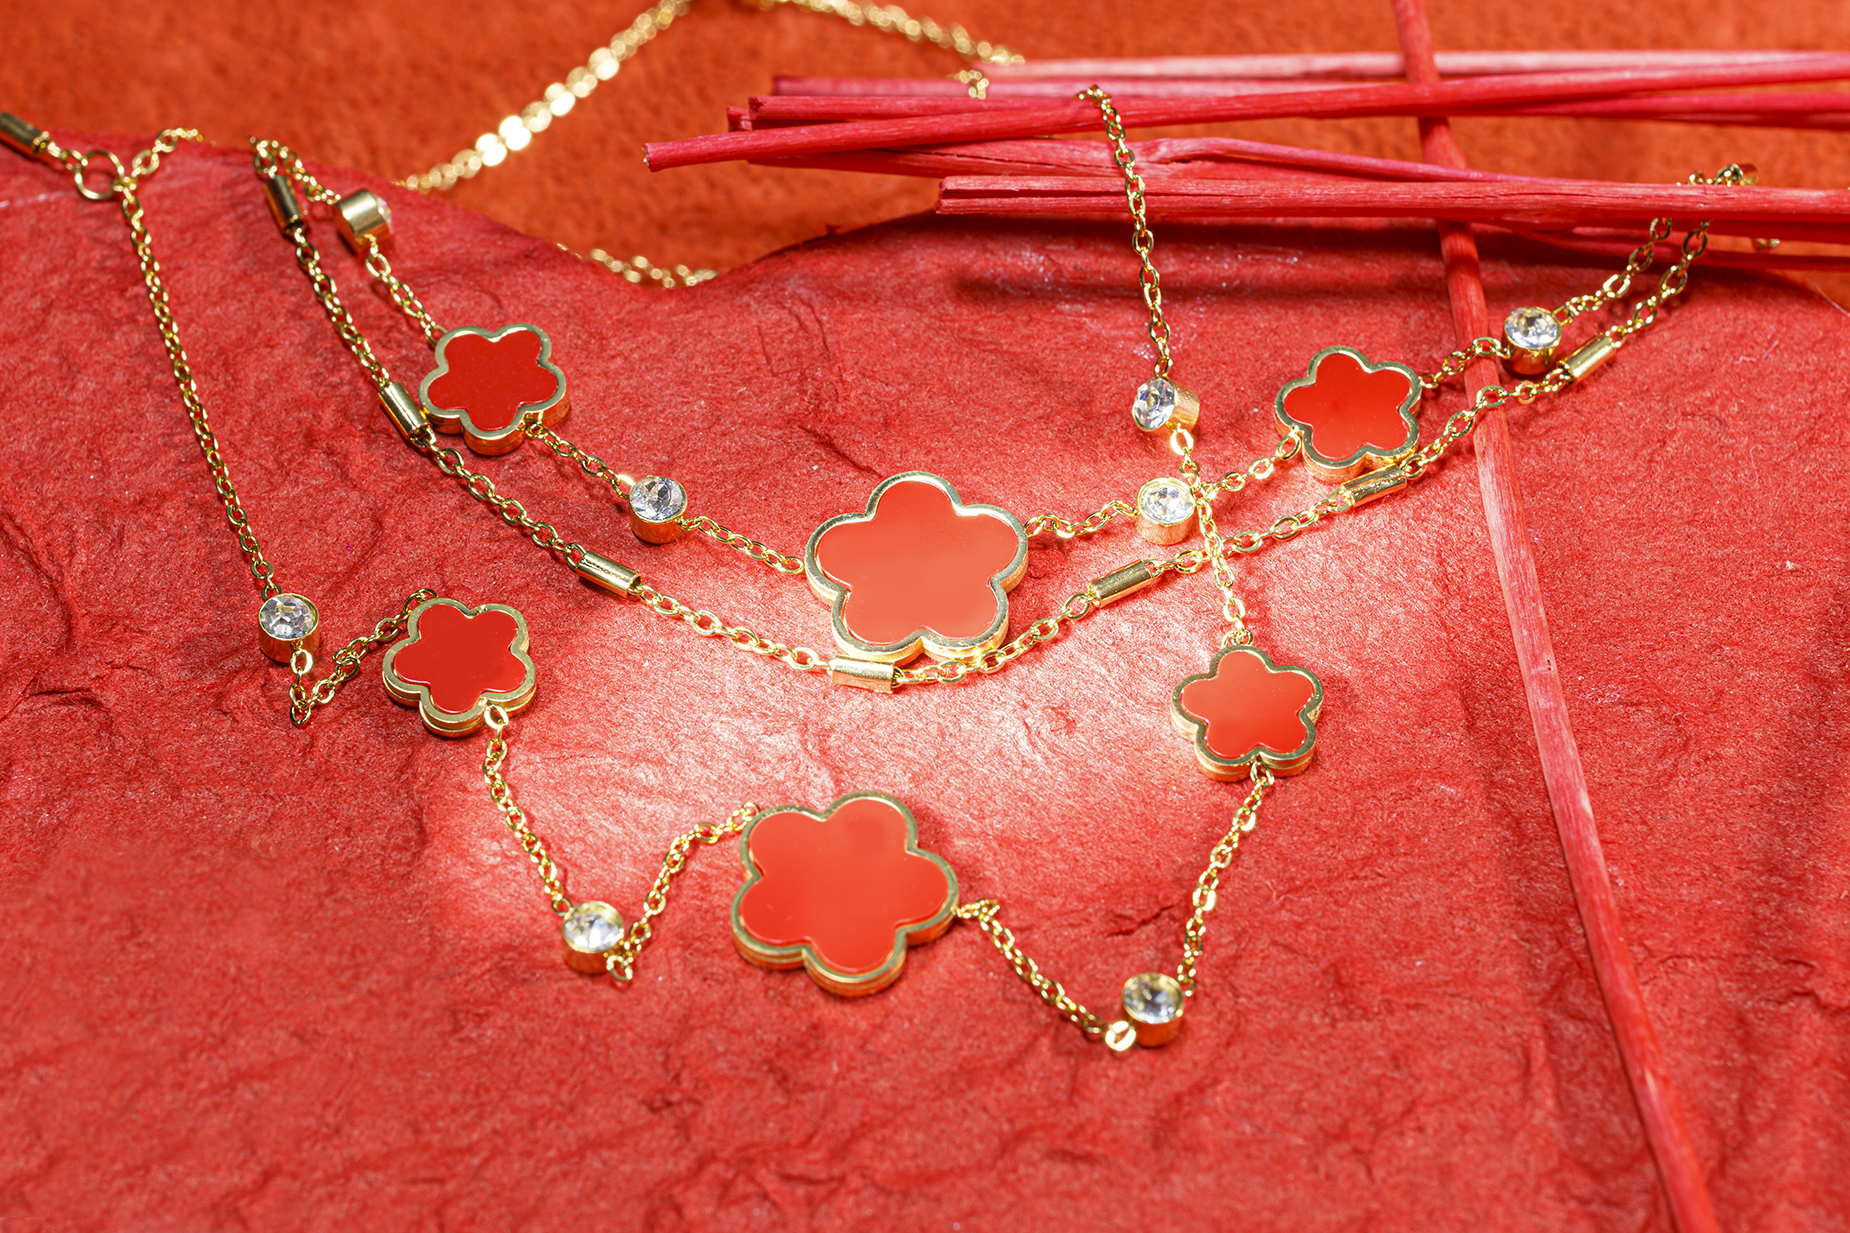 Bijoux, pendentif et bracelet par société AKATAIYO - mise en scène, décoration pour bijoux féminin en or ou argent.